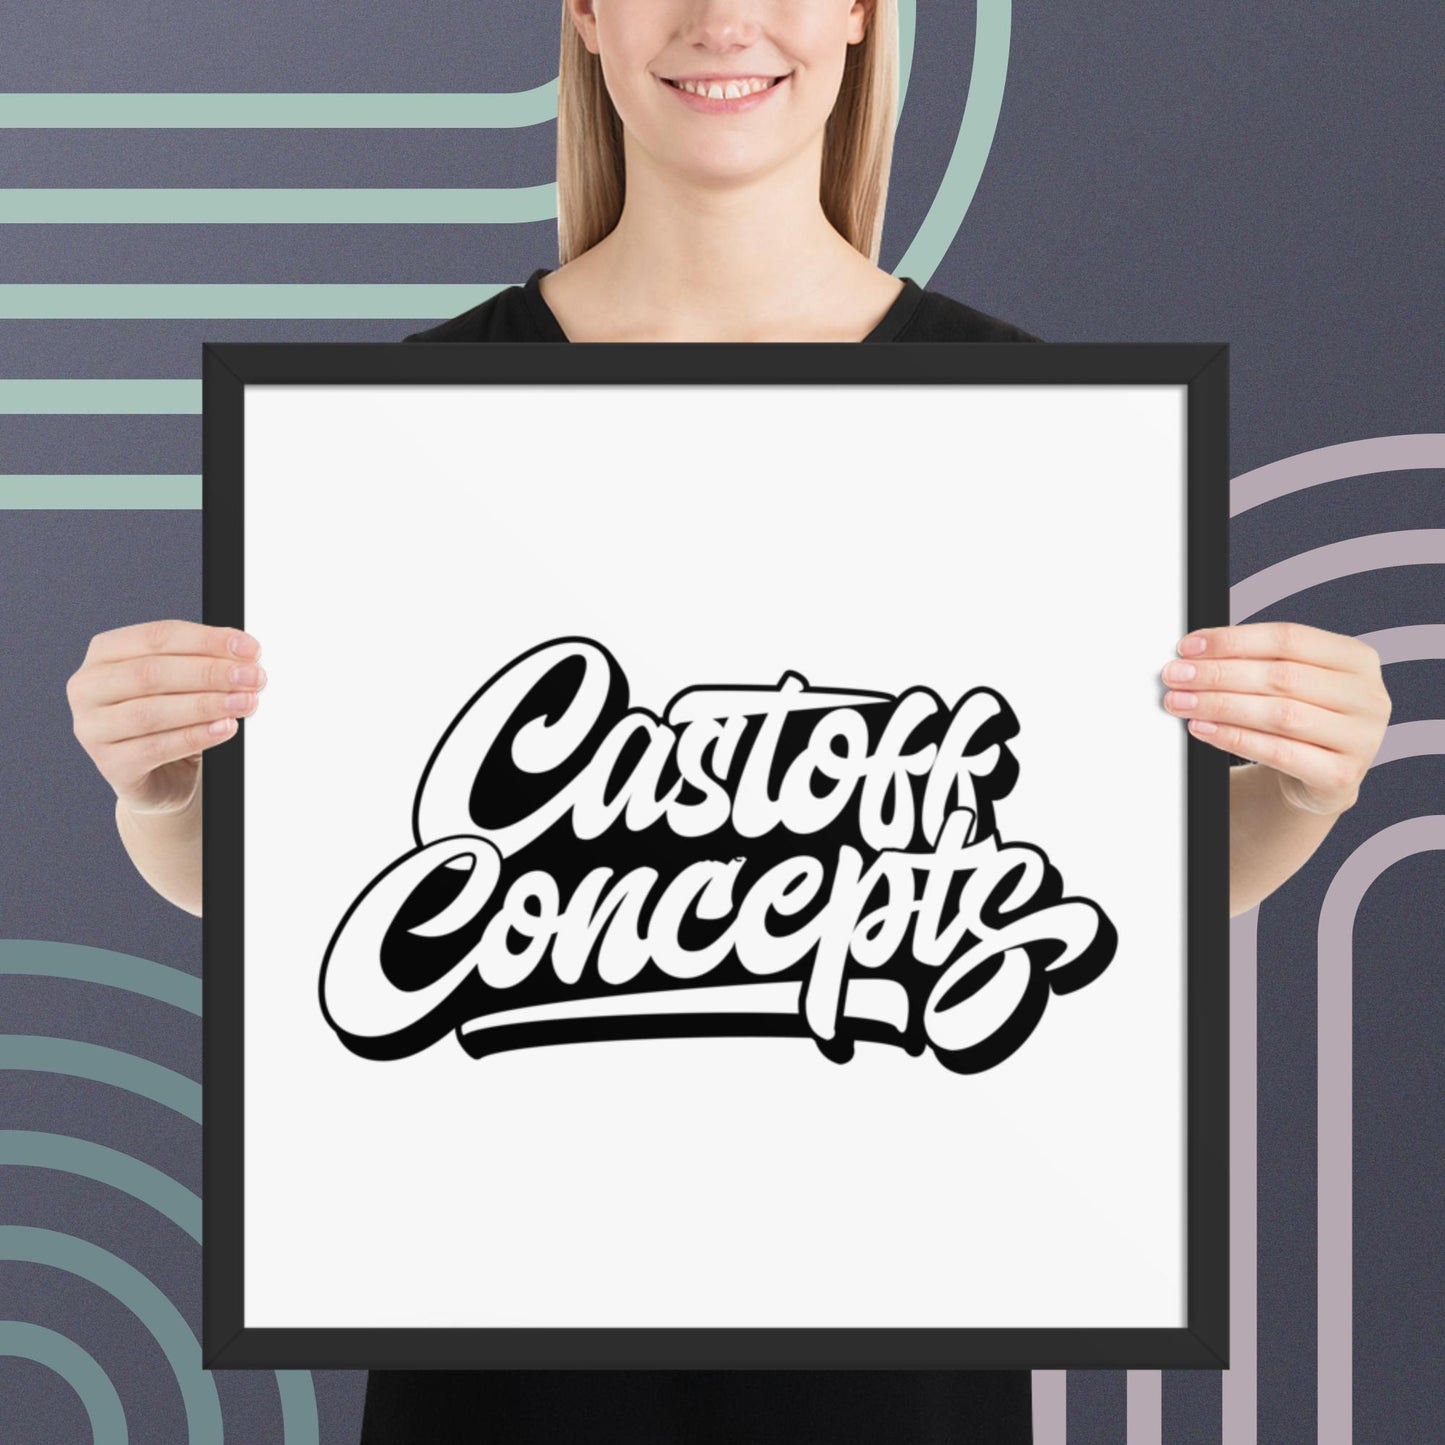 Castoff Concepts Framed Poster